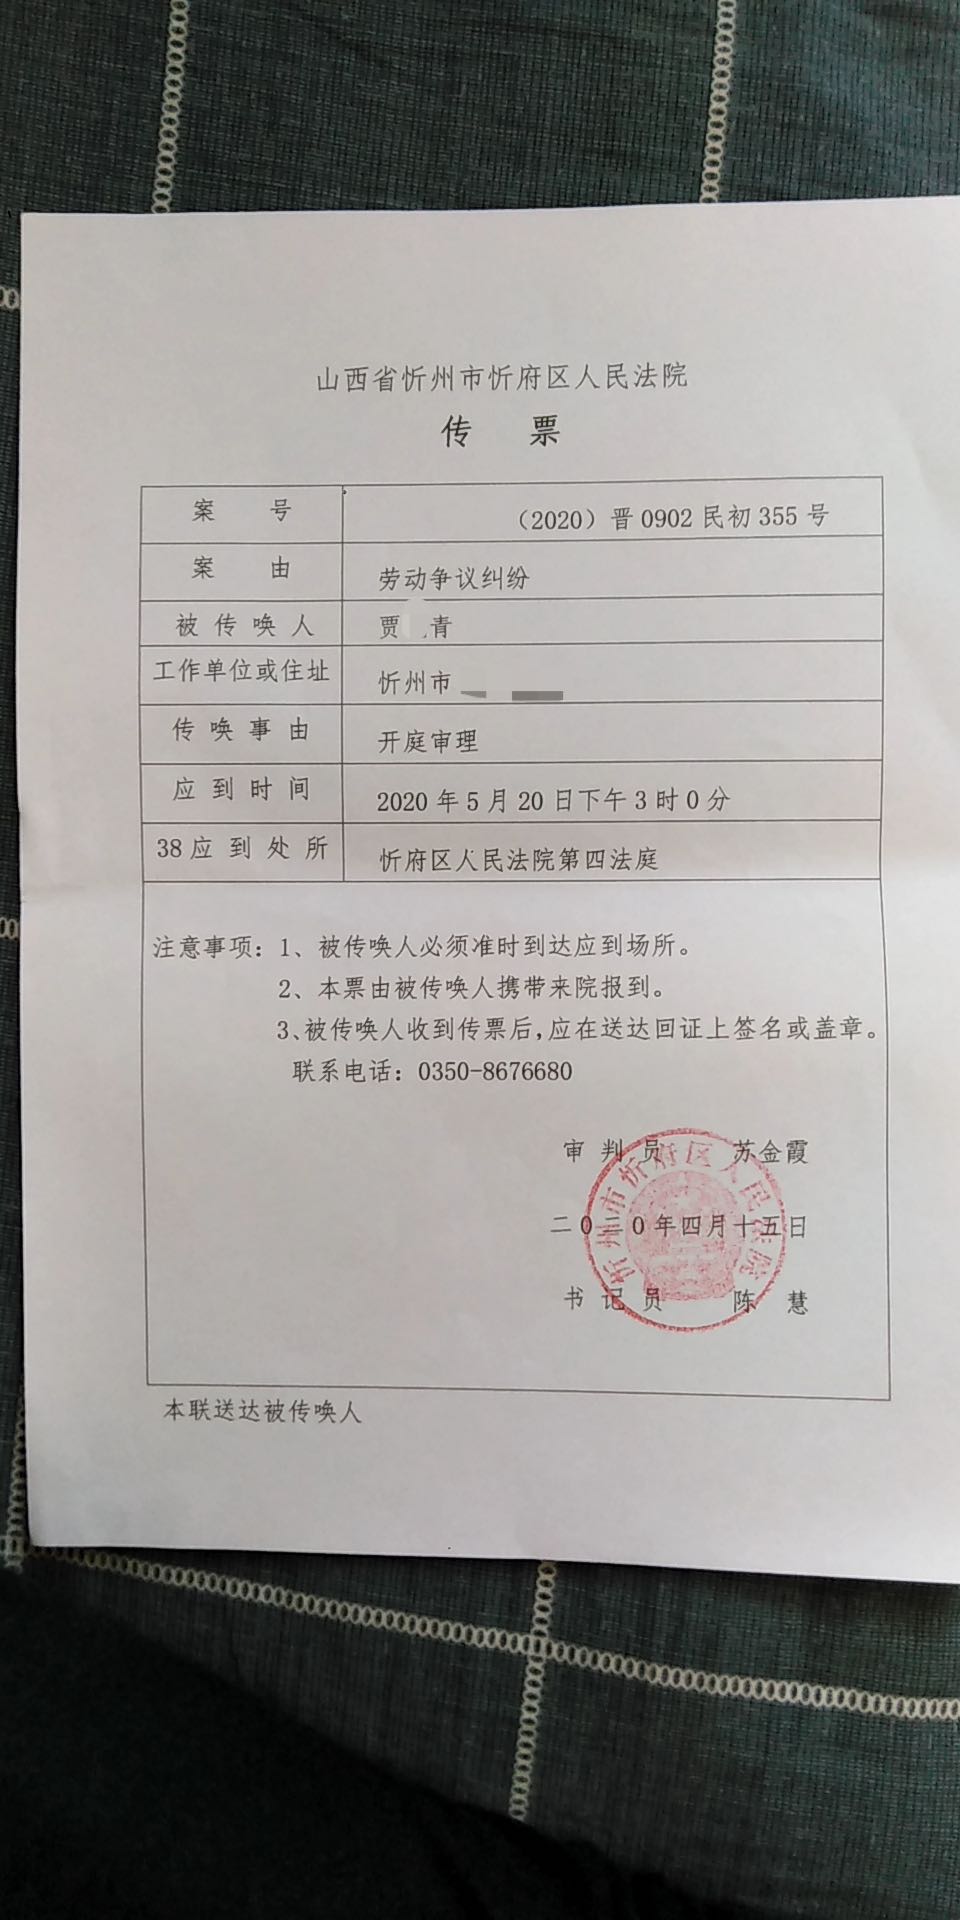 4月17日下午,贾某青收到山西省忻州市忻府区人民法院传票